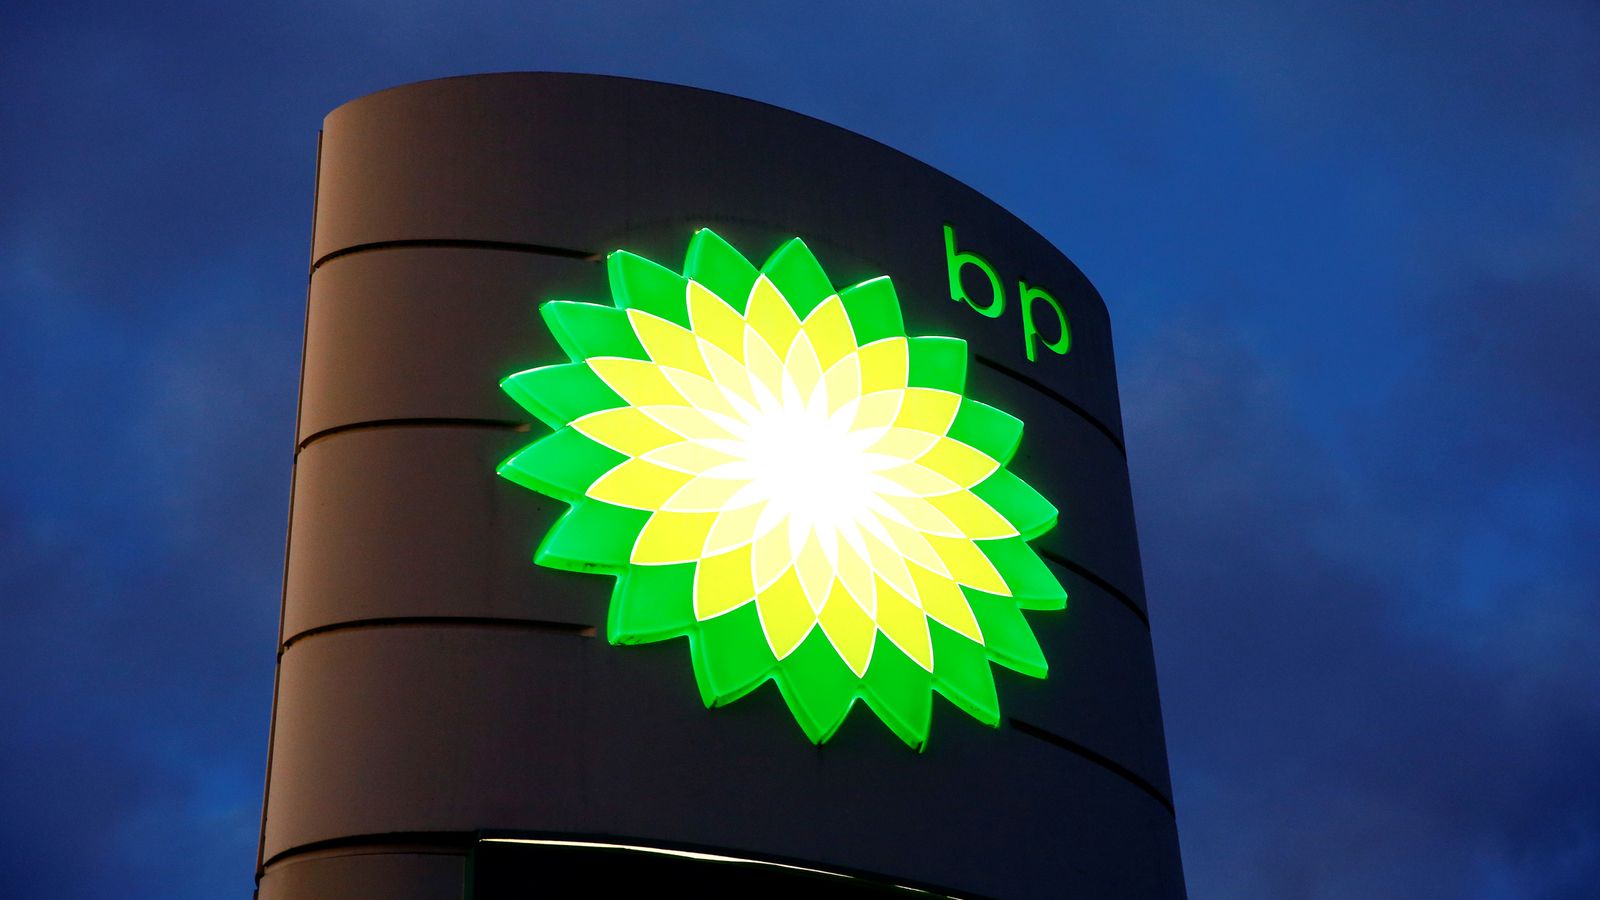 英国石油logo图片